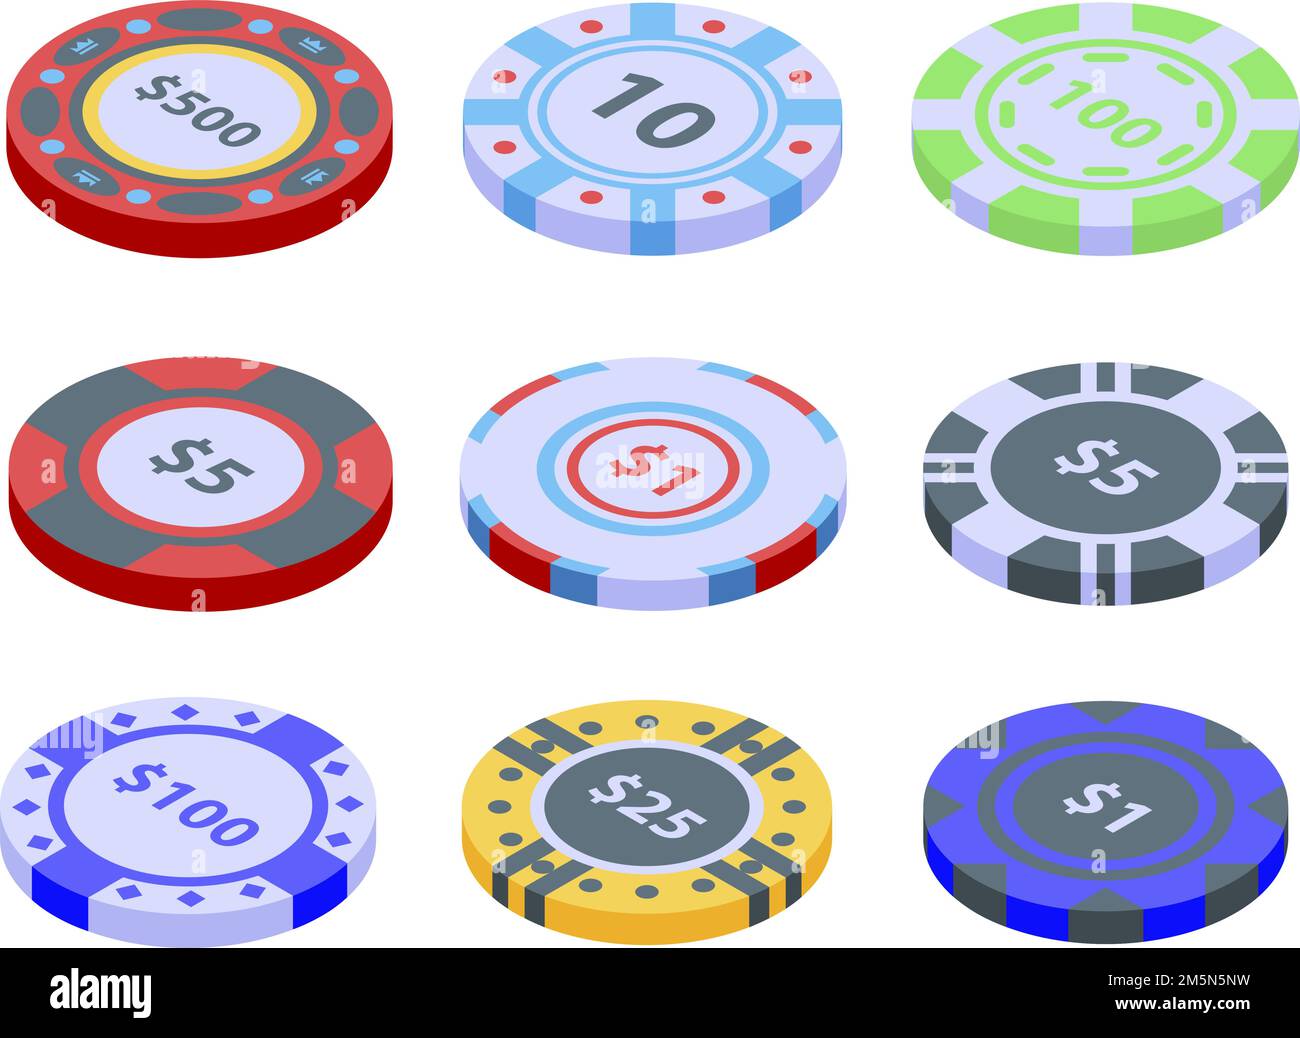 Casino Chips Symbole gesetzt. Isometrischer Satz von Casino-Chips Vektor-Icons für Web-Design isoliert auf weißem Hintergrund Stock Vektor